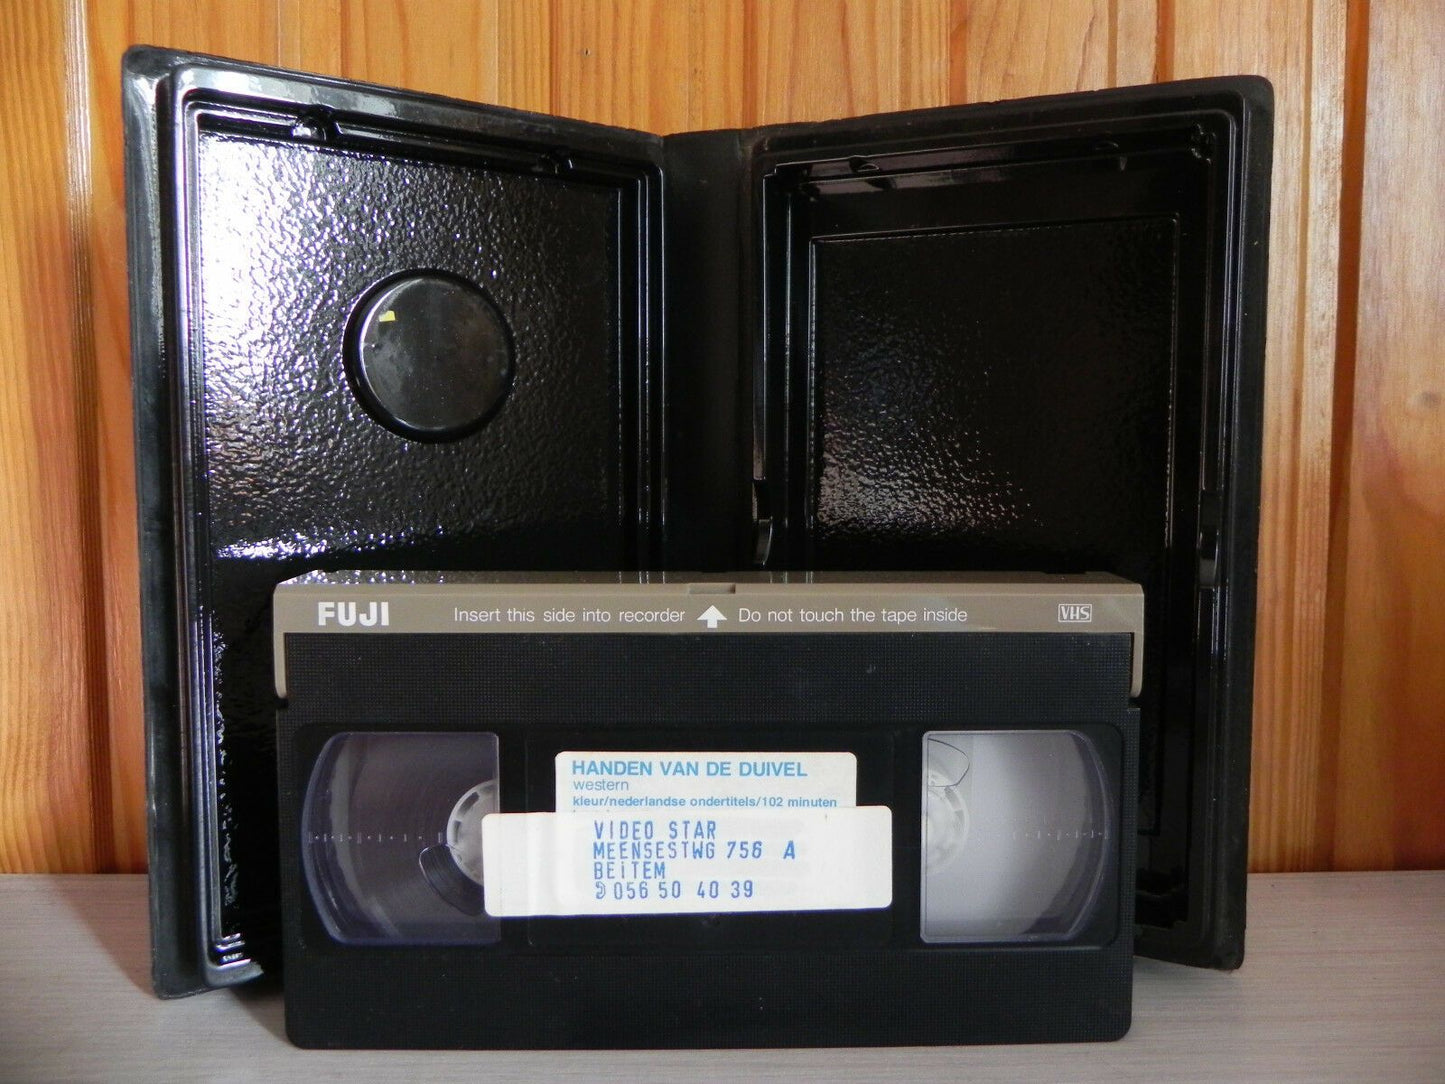 De Rechter... En De Linkerhand Van De Duivel - Rank Video - Pre-Cert - 265 - VHS-